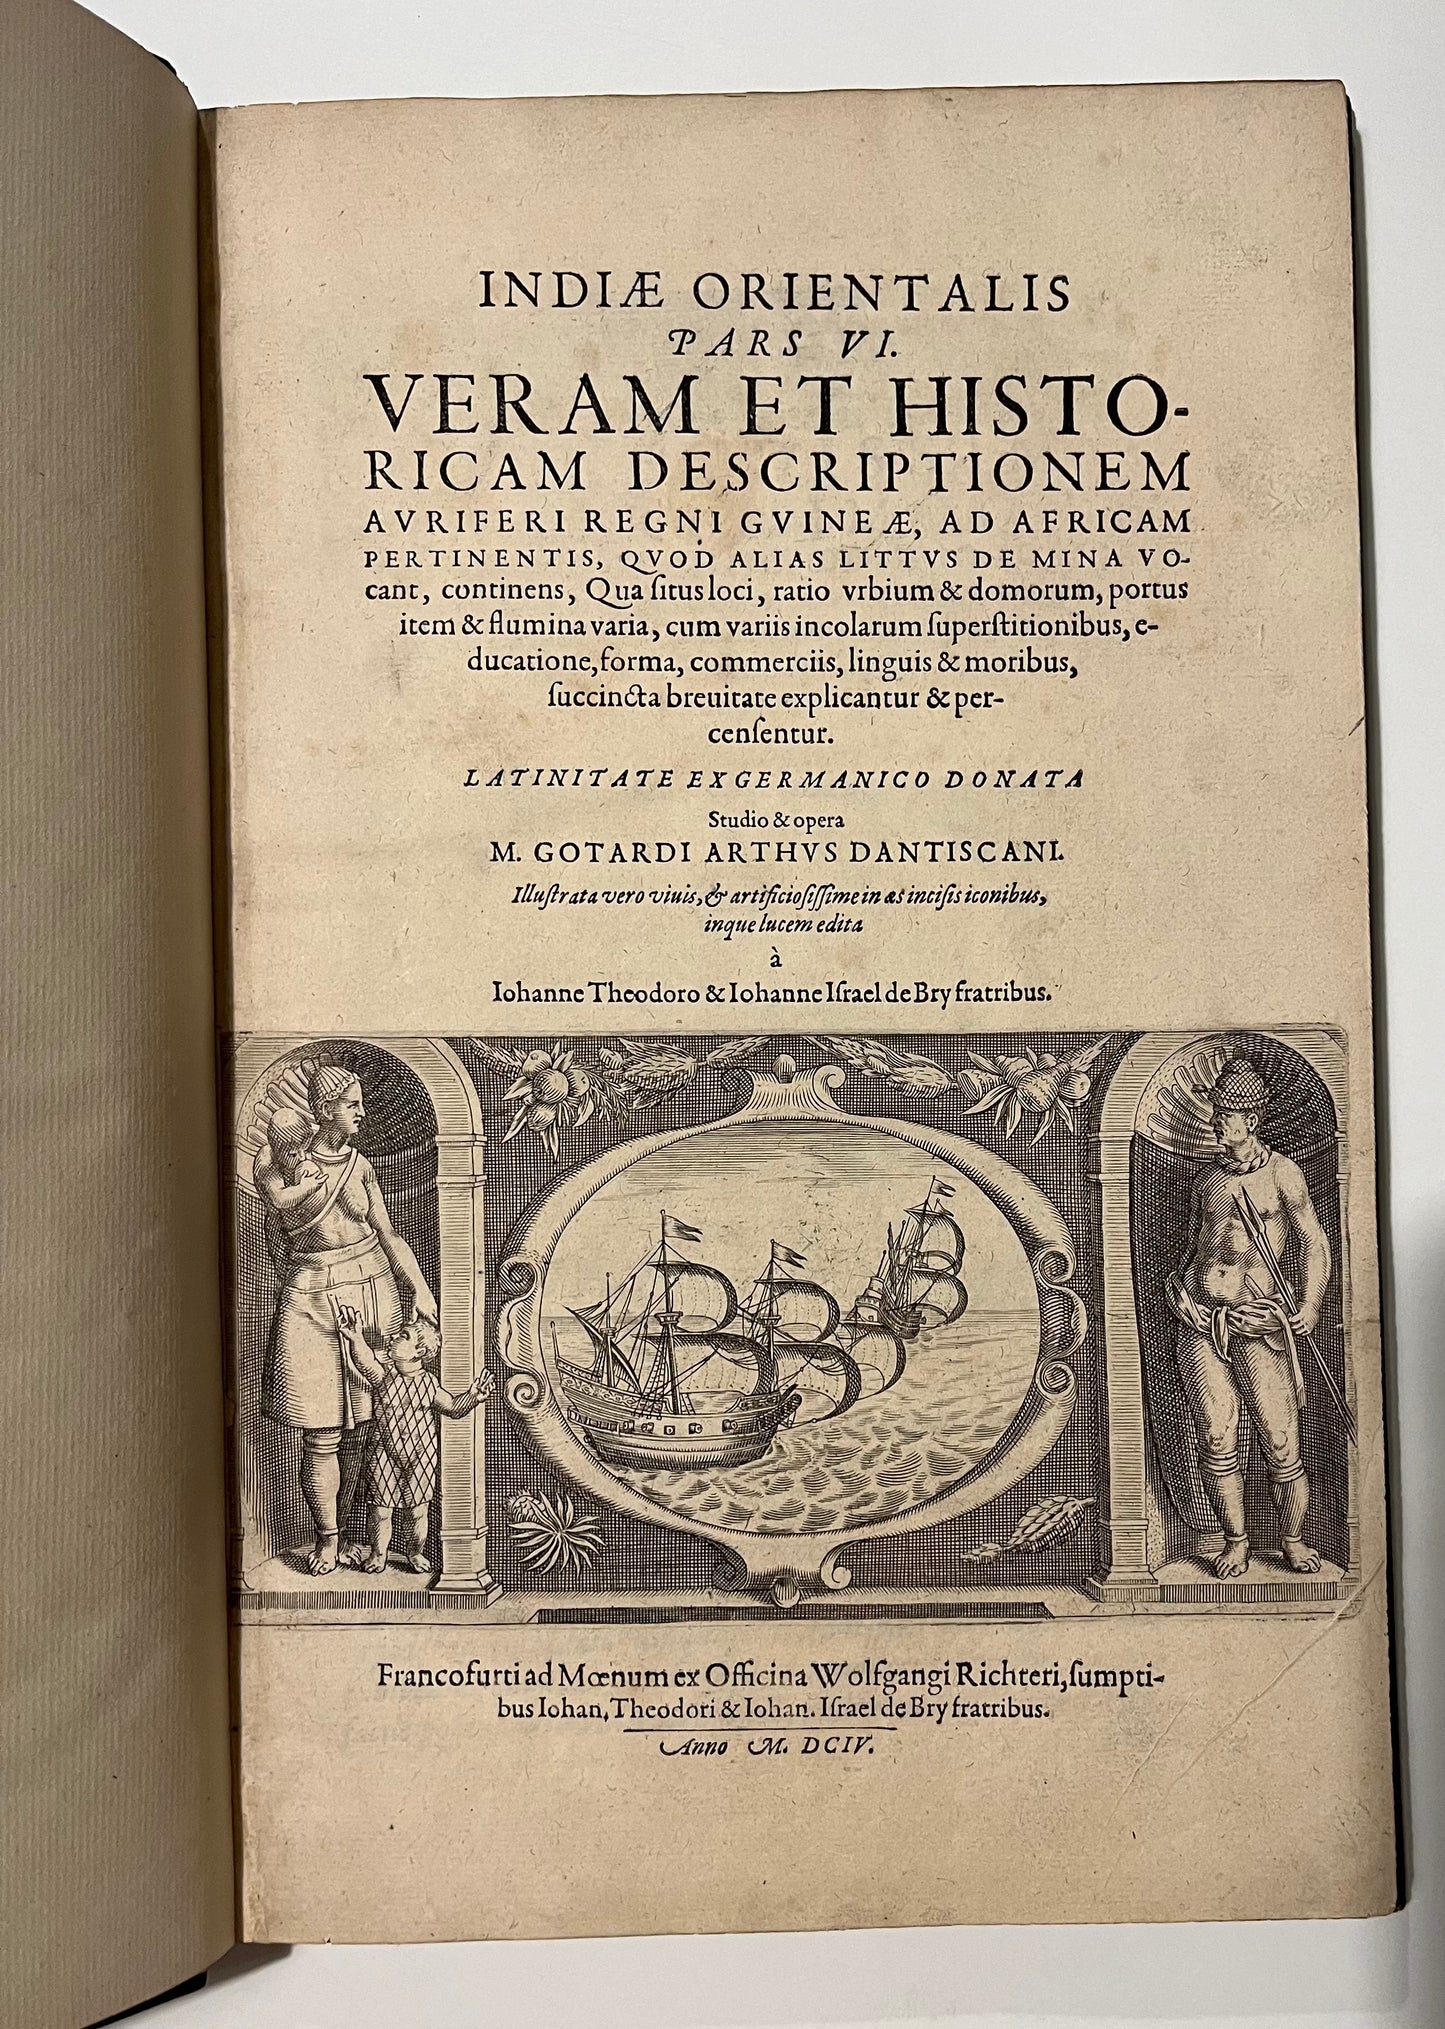 "Veram et historicam descriptionem auriferi regni Guineae."